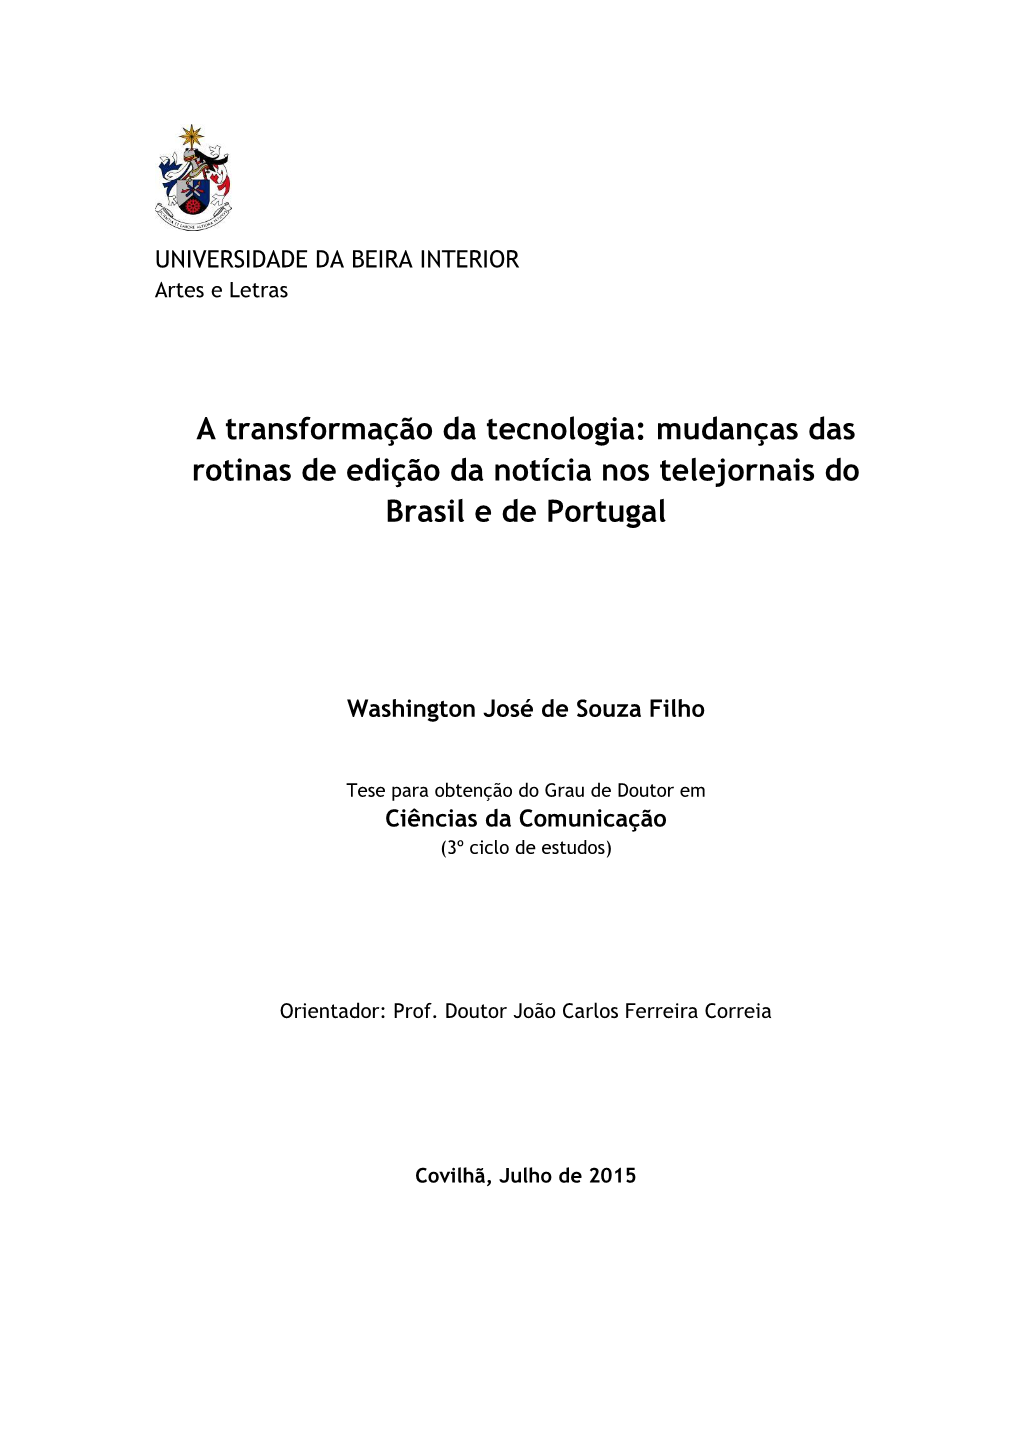 A Transformação Da Tecnologia: Mudanças Das Rotinas De Edição Da Notícia Nos Telejornais Do Brasil E De Portugal